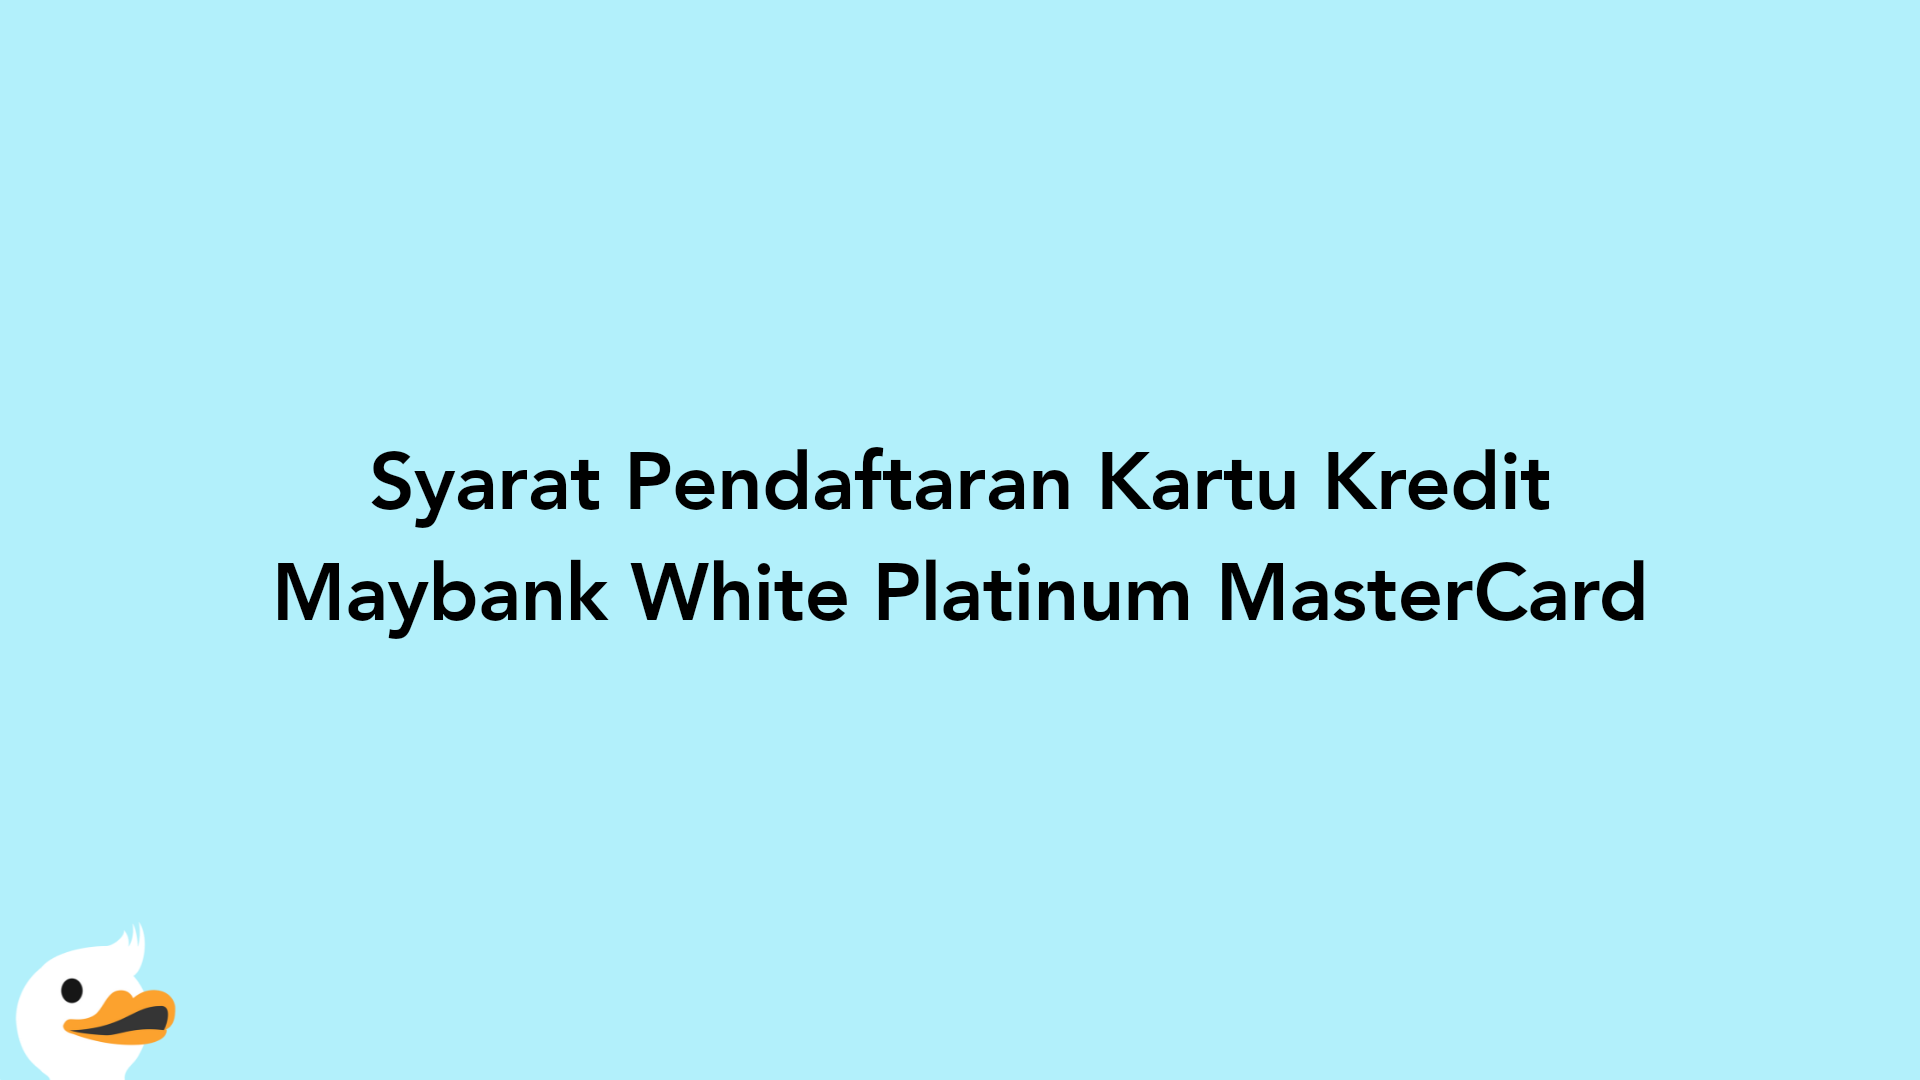 Syarat Pendaftaran Kartu Kredit Maybank White Platinum MasterCard